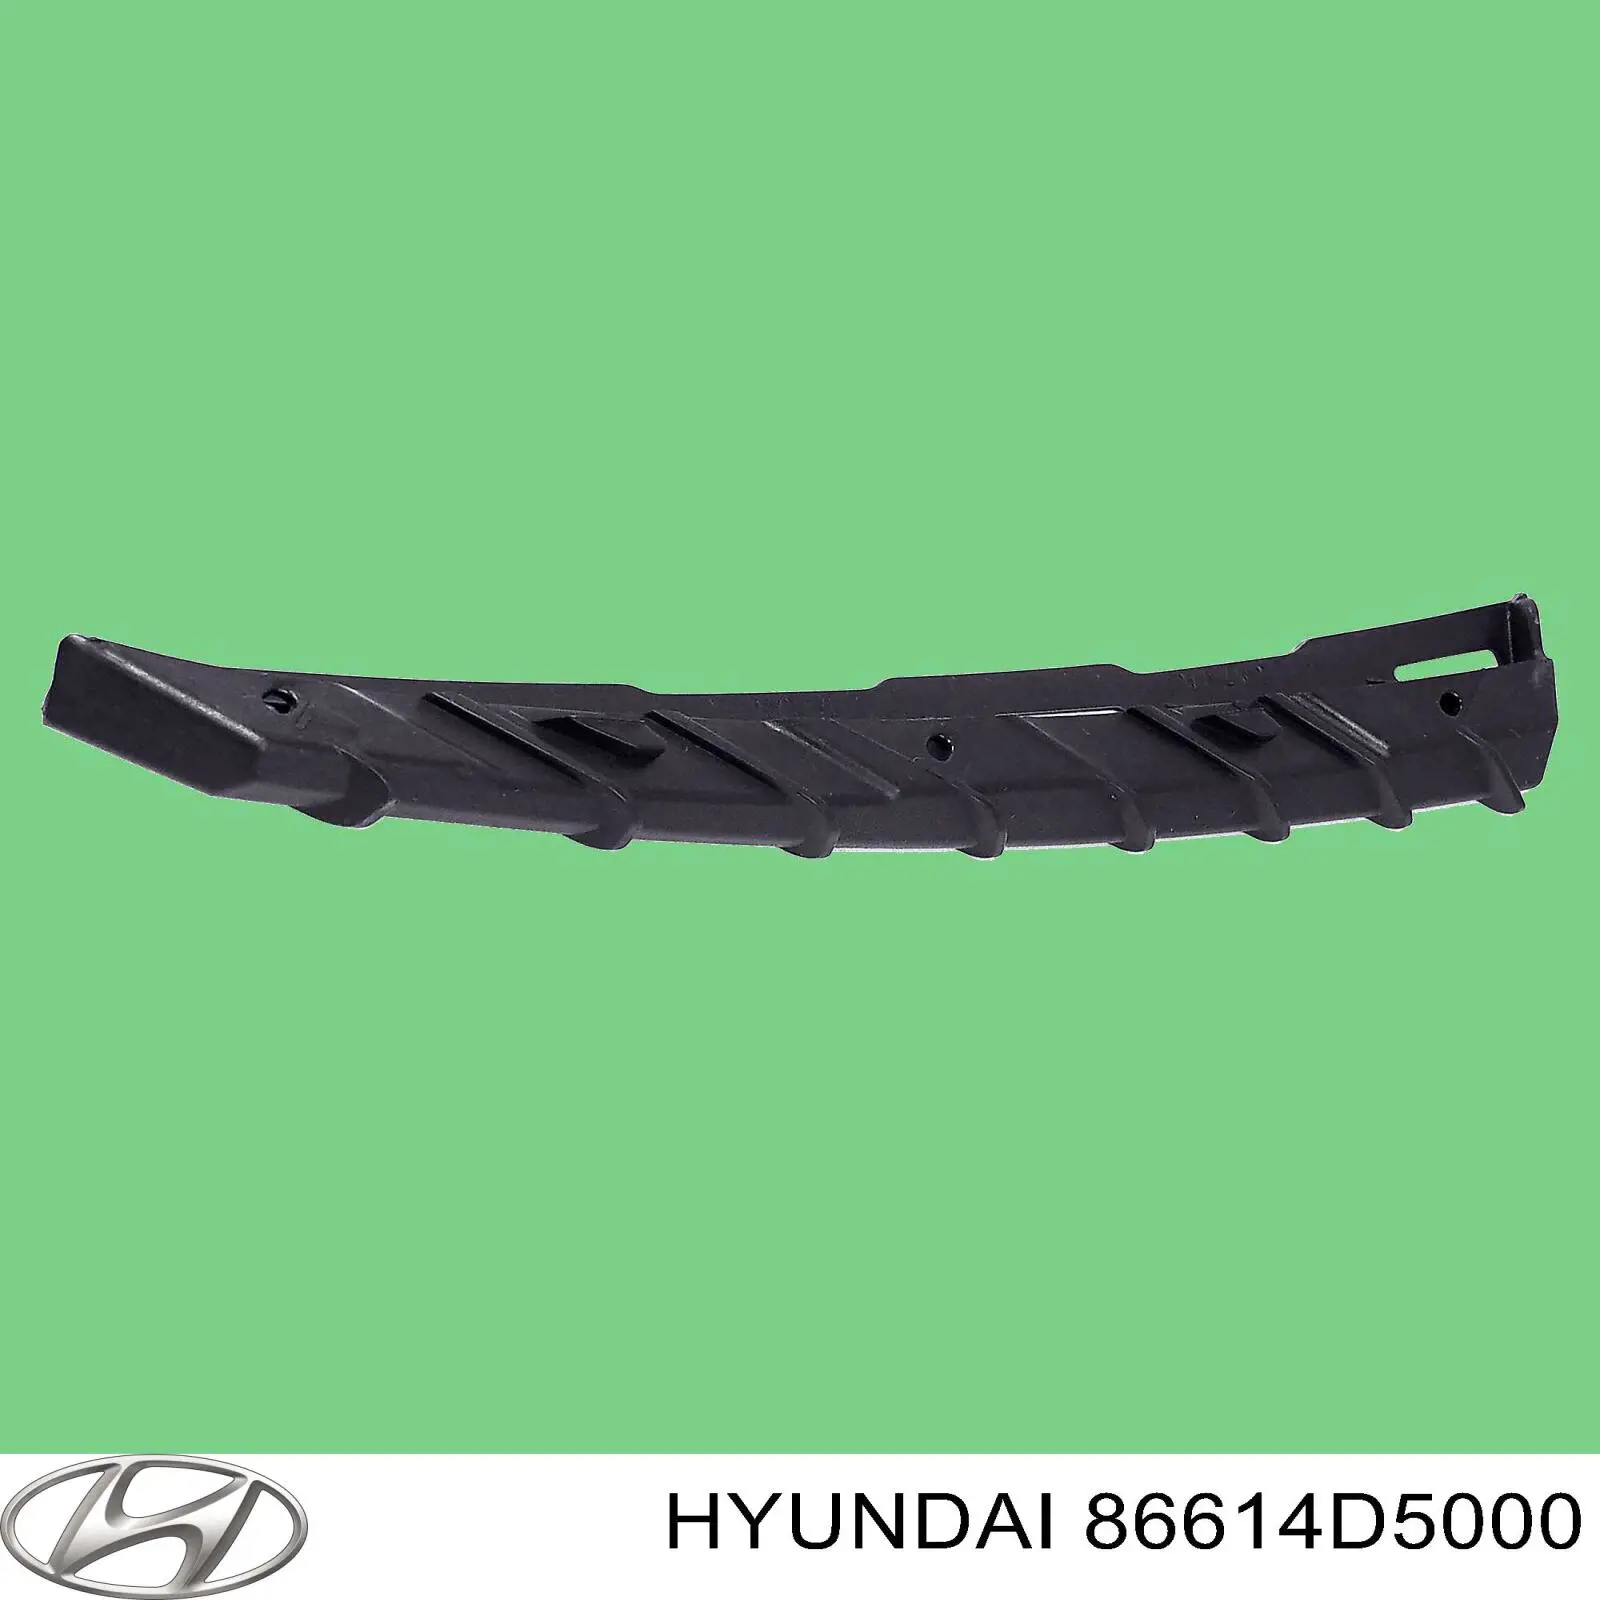 Moldura de parachoques trasero para Hyundai Getz 